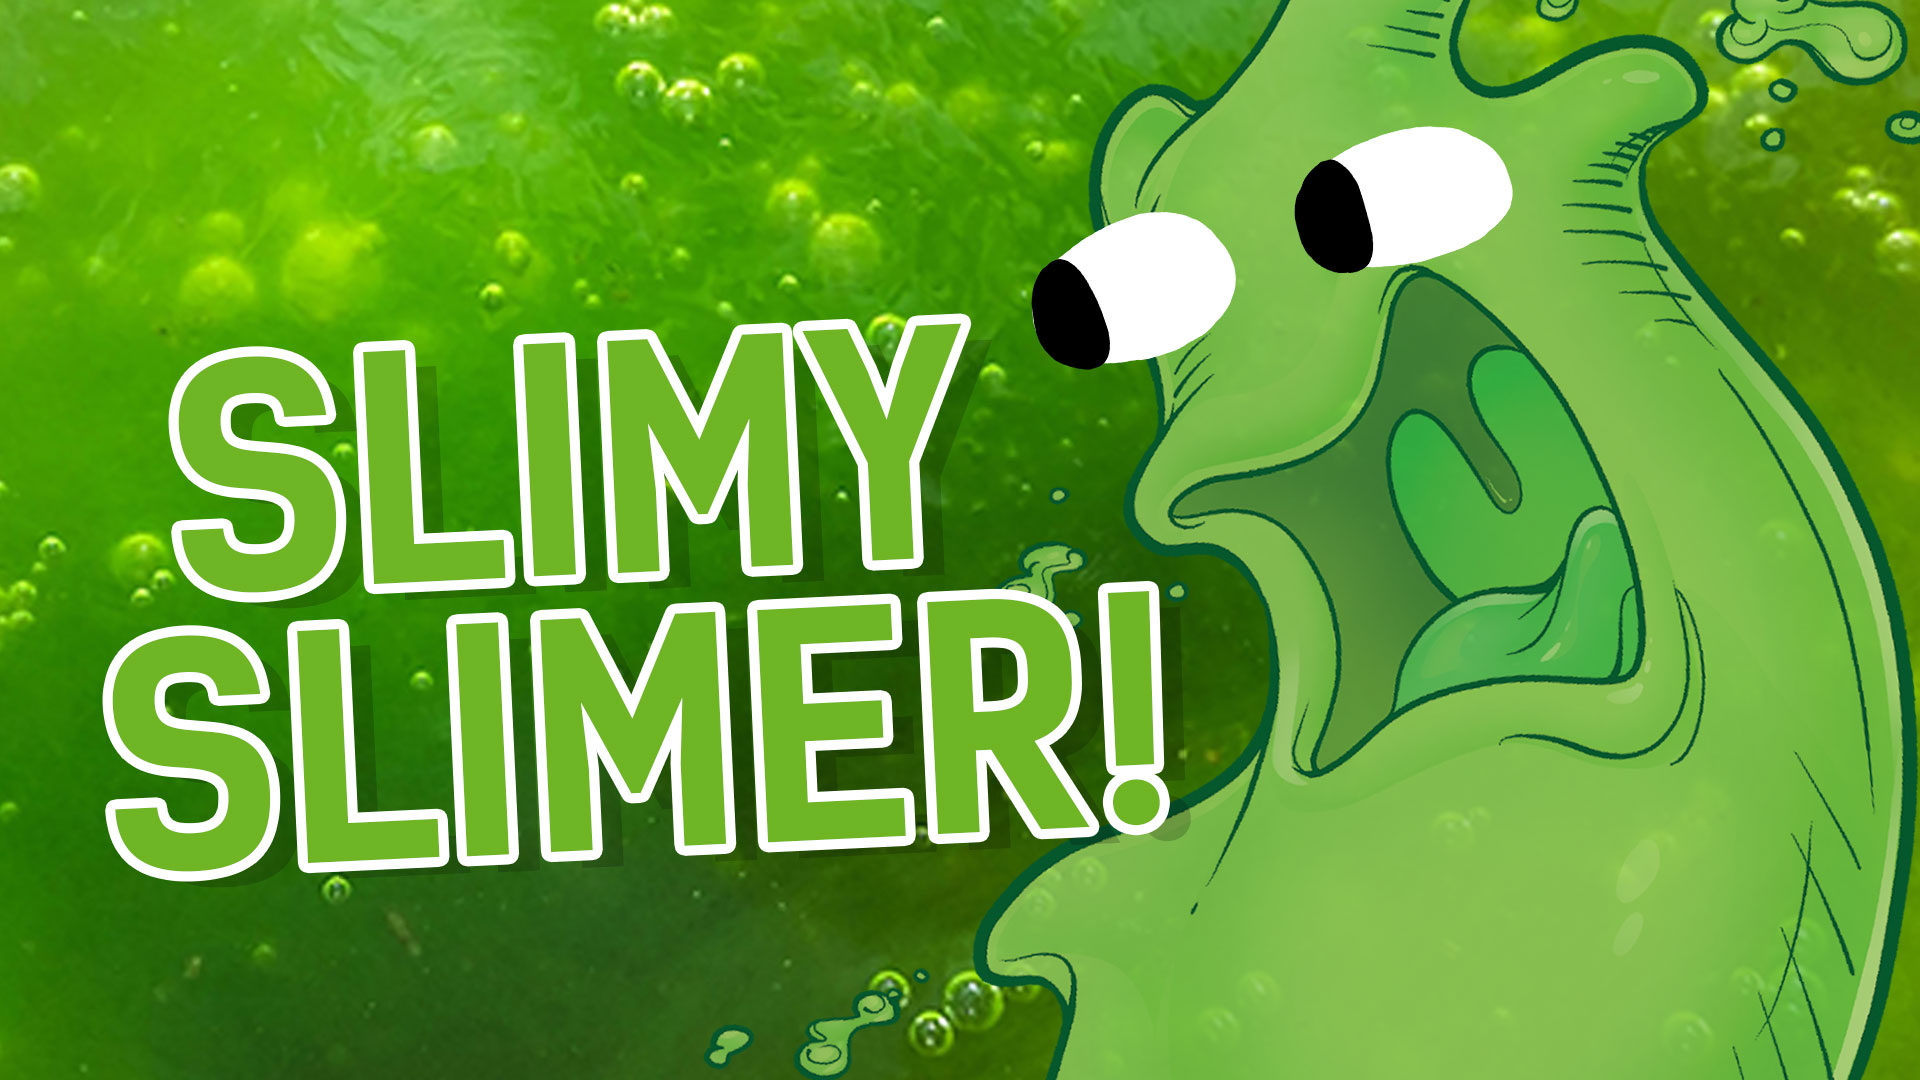 Result: Slimy Slimer